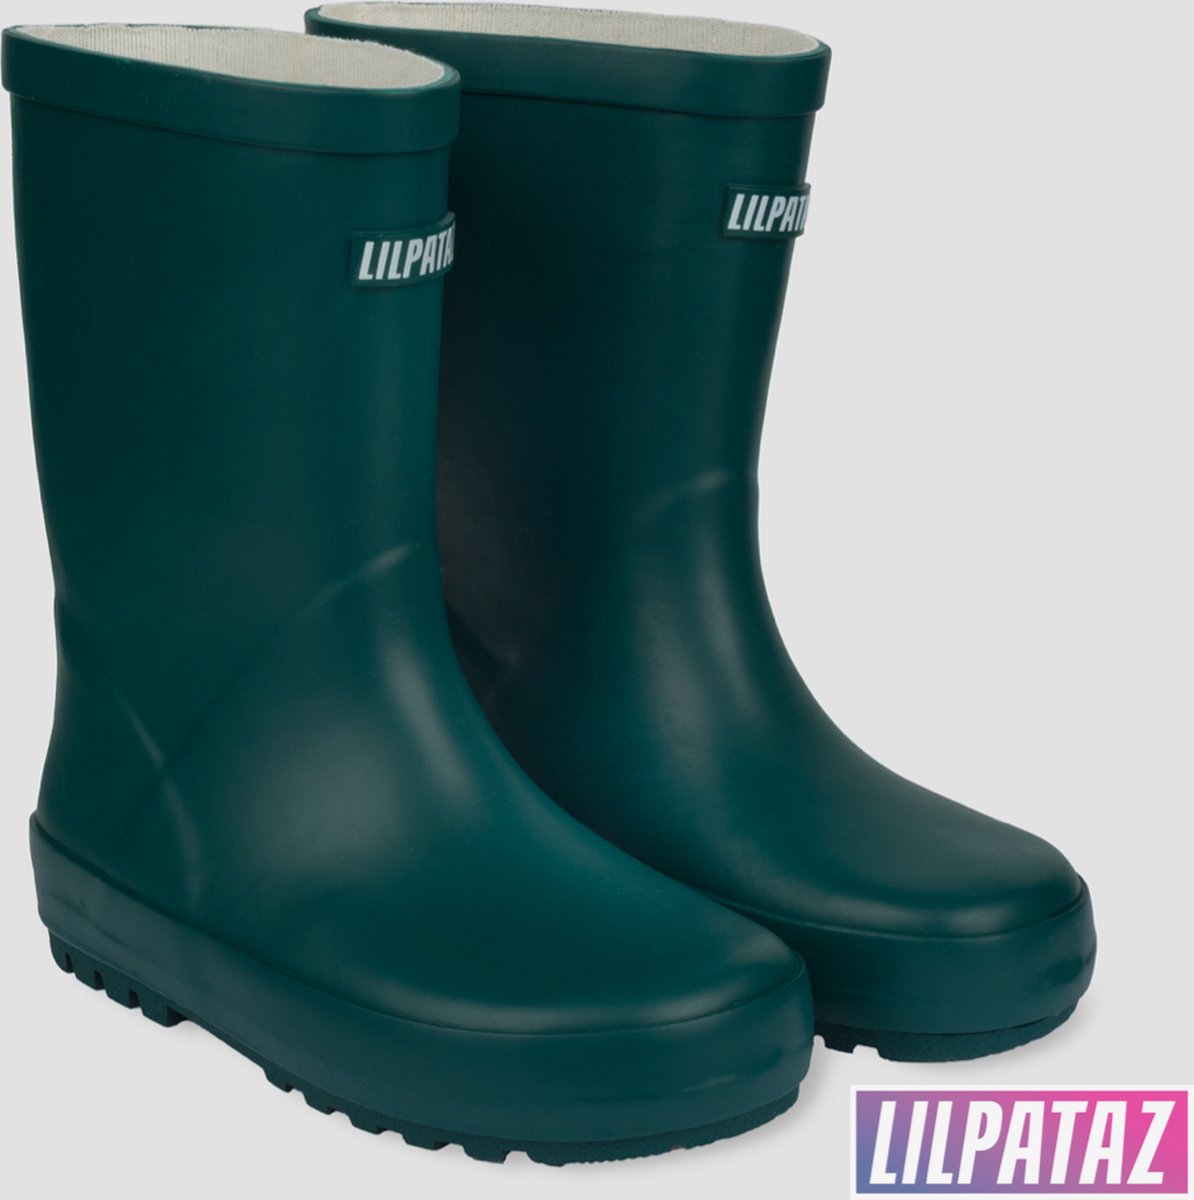 LilPataz Rainboot - Regenlaars kinderen - Jongens Meisjes - Groen - kinder regenlaarzen - Maat 26